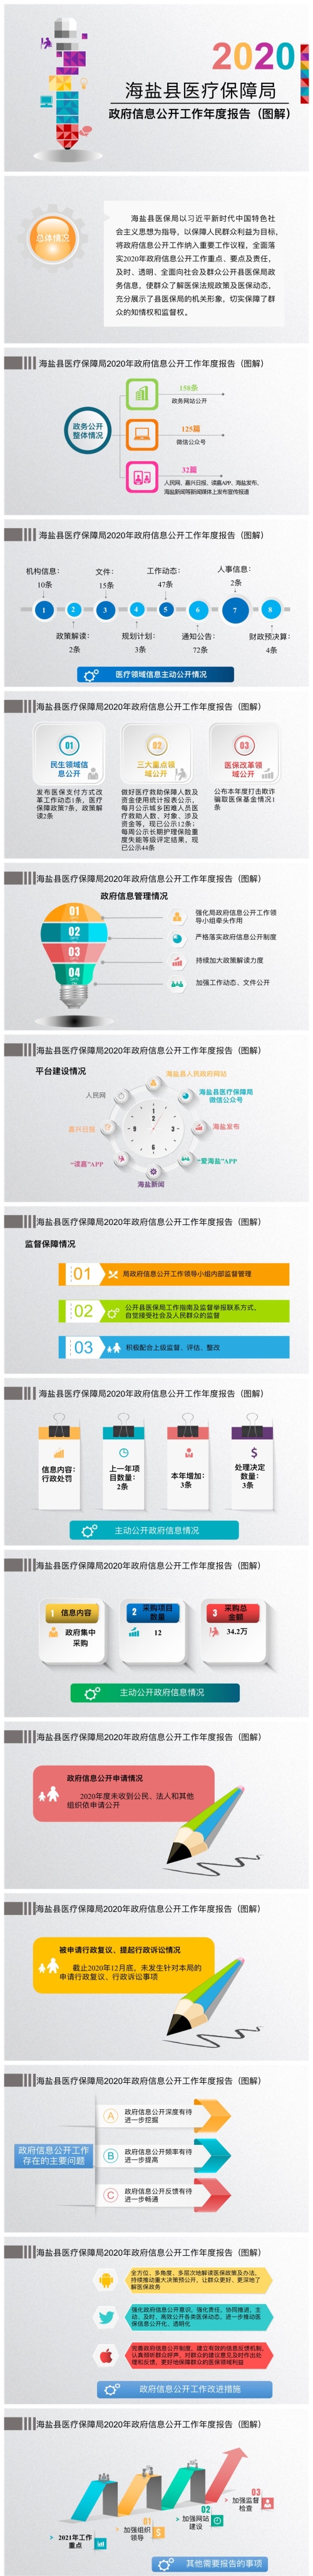 海盐县医疗保障局2020年政府信息公开工作年度报告图解.jpg